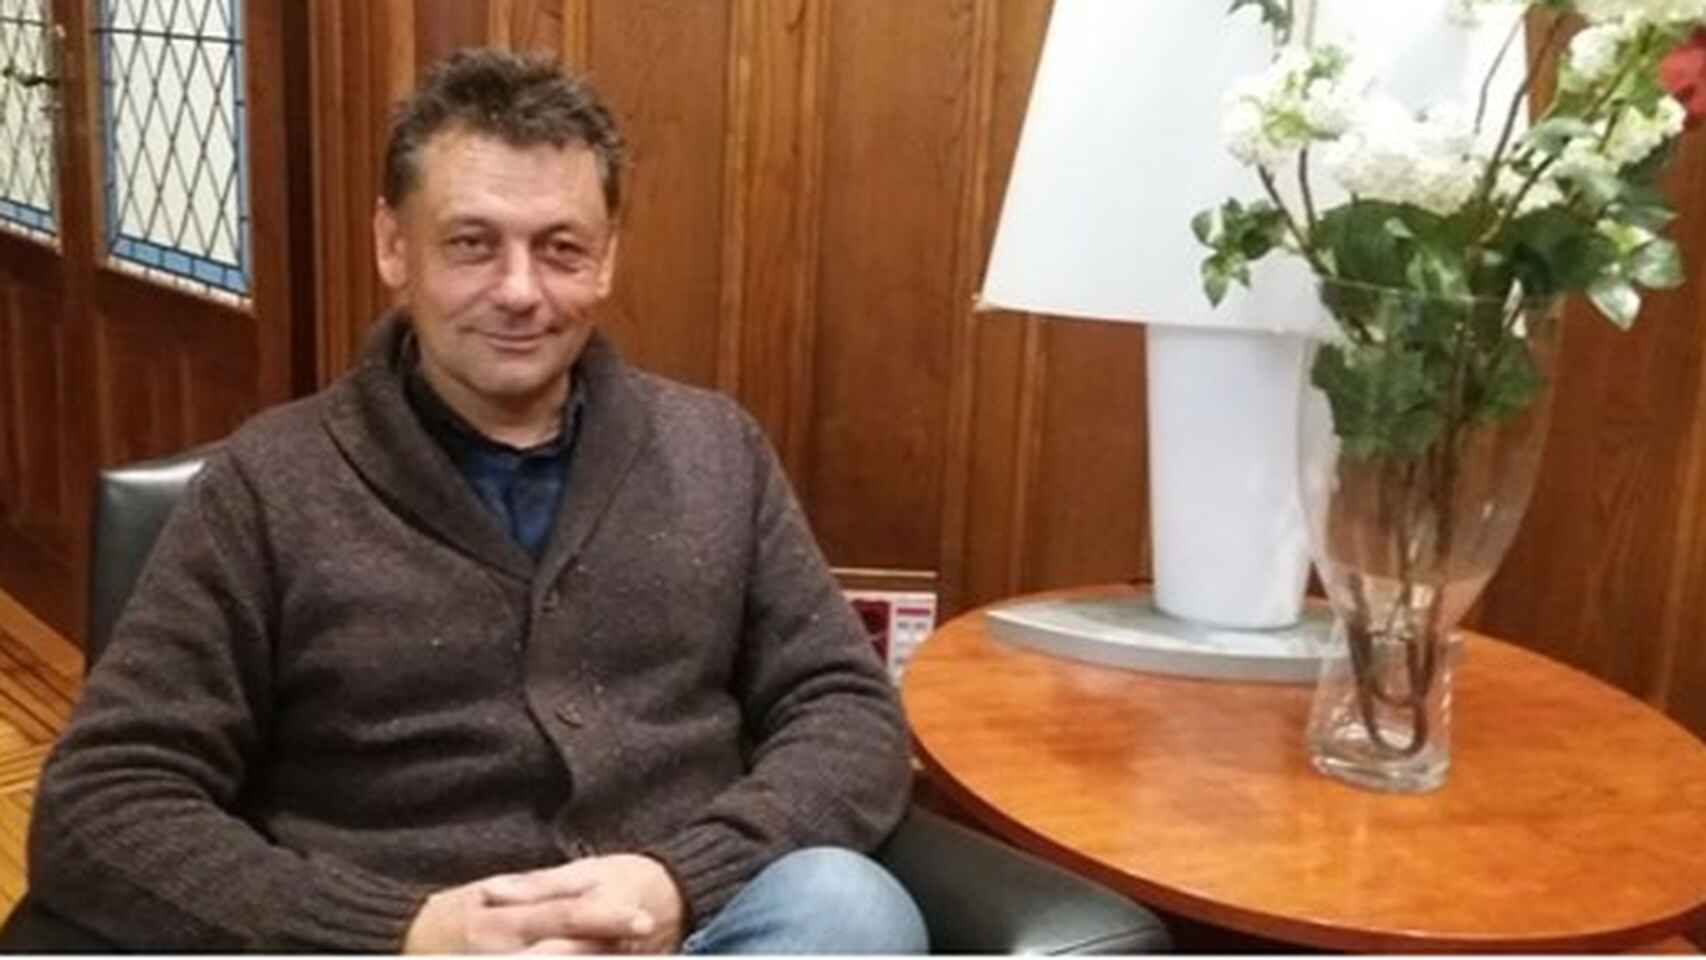 El concejal de Izquierda Unida en el Ayuntamiento de Llanes, Javier Ardines, asesinado en 2018.